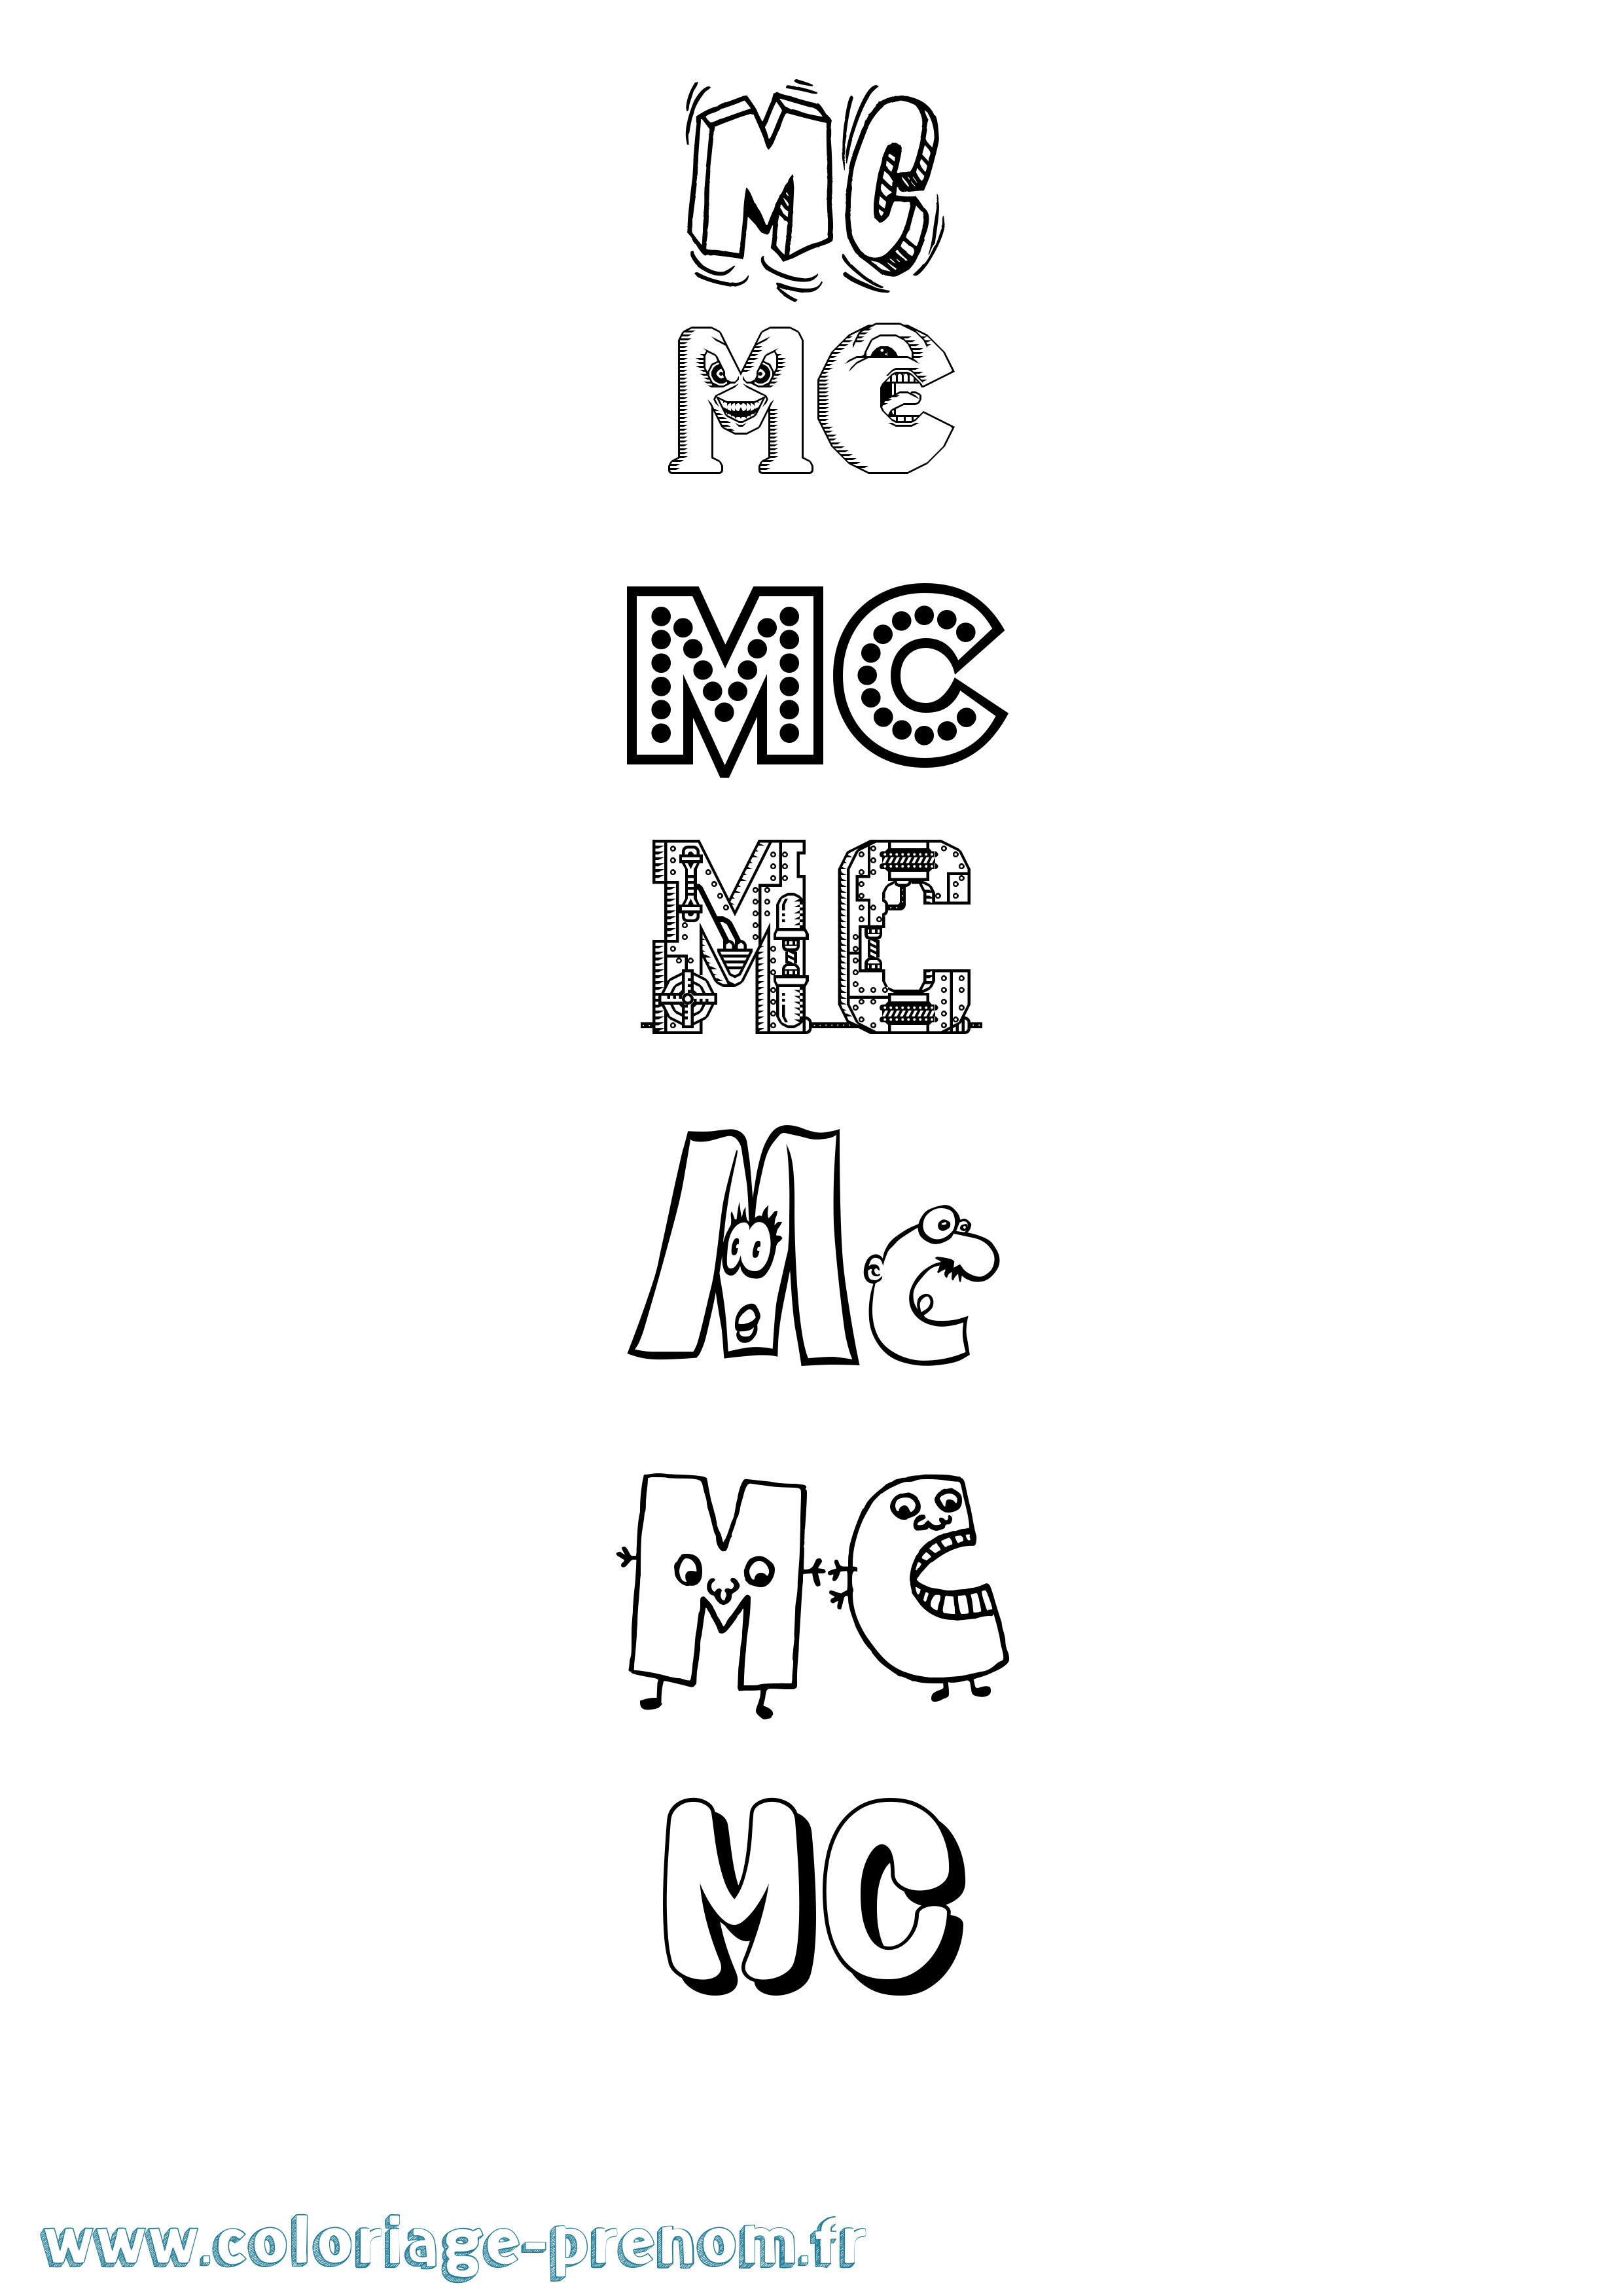 Coloriage prénom Mc Fun